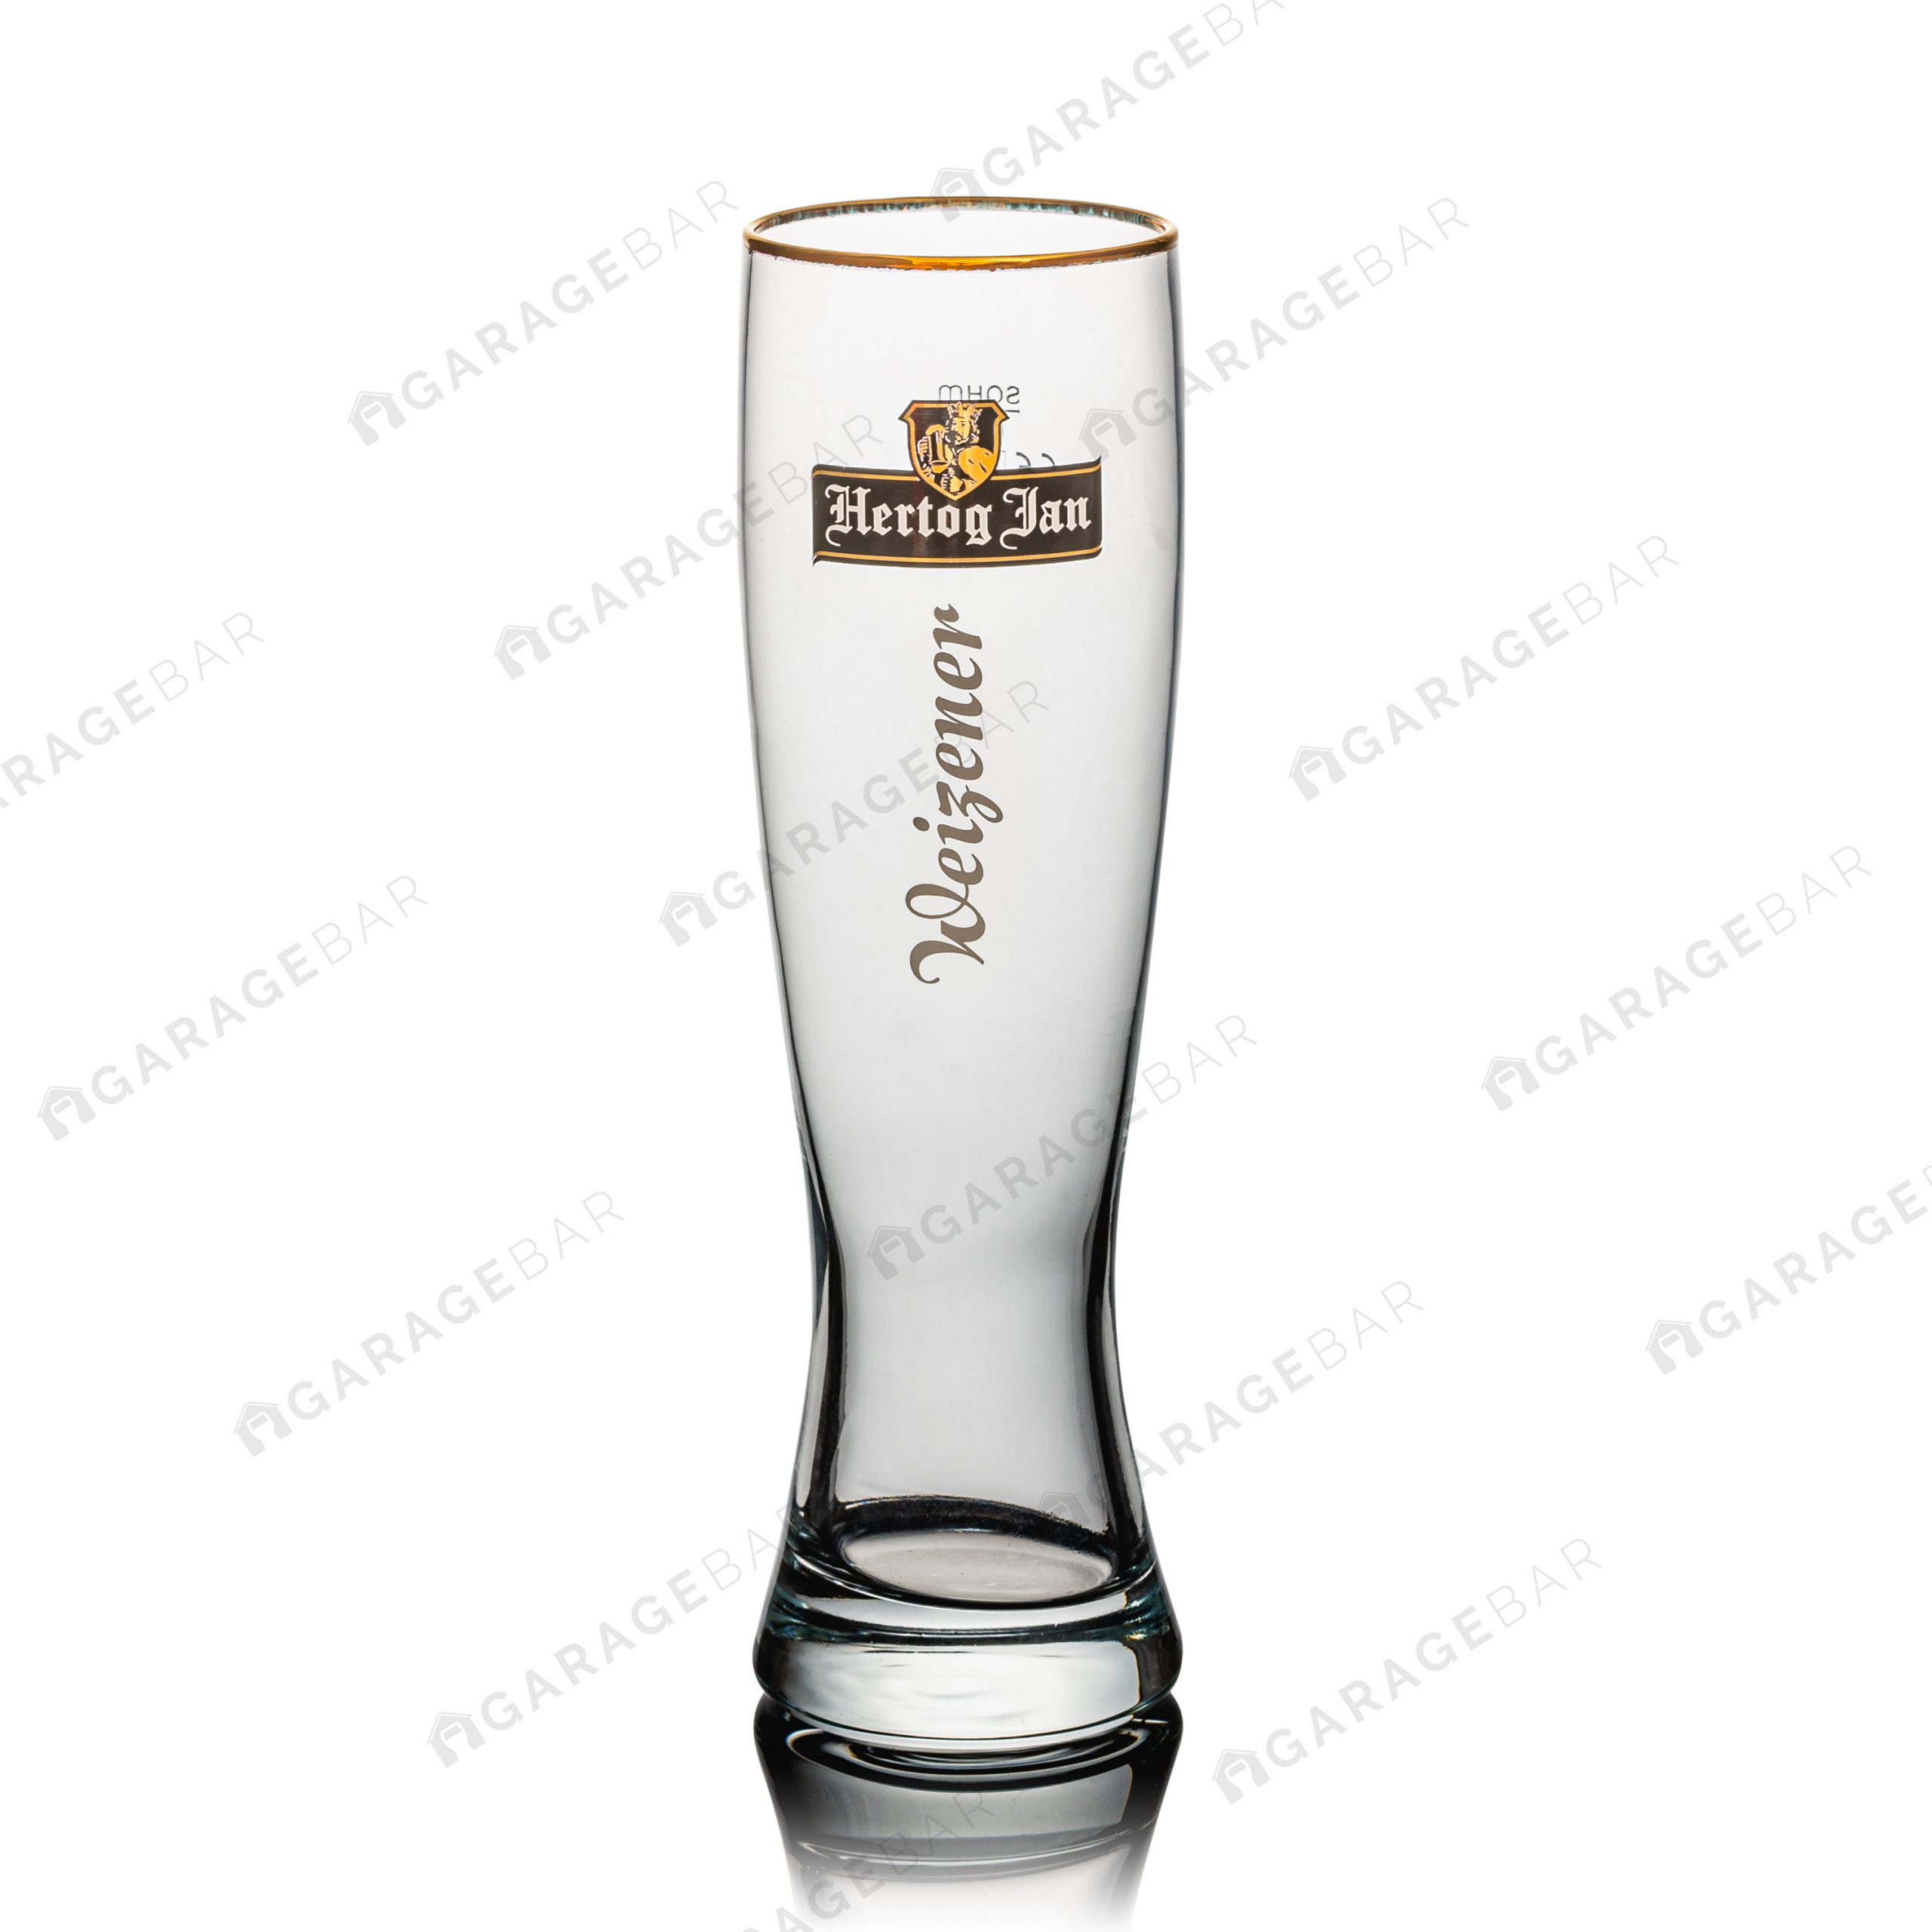 Hertog Jan Weizener 0,5l Pint Beer Glass